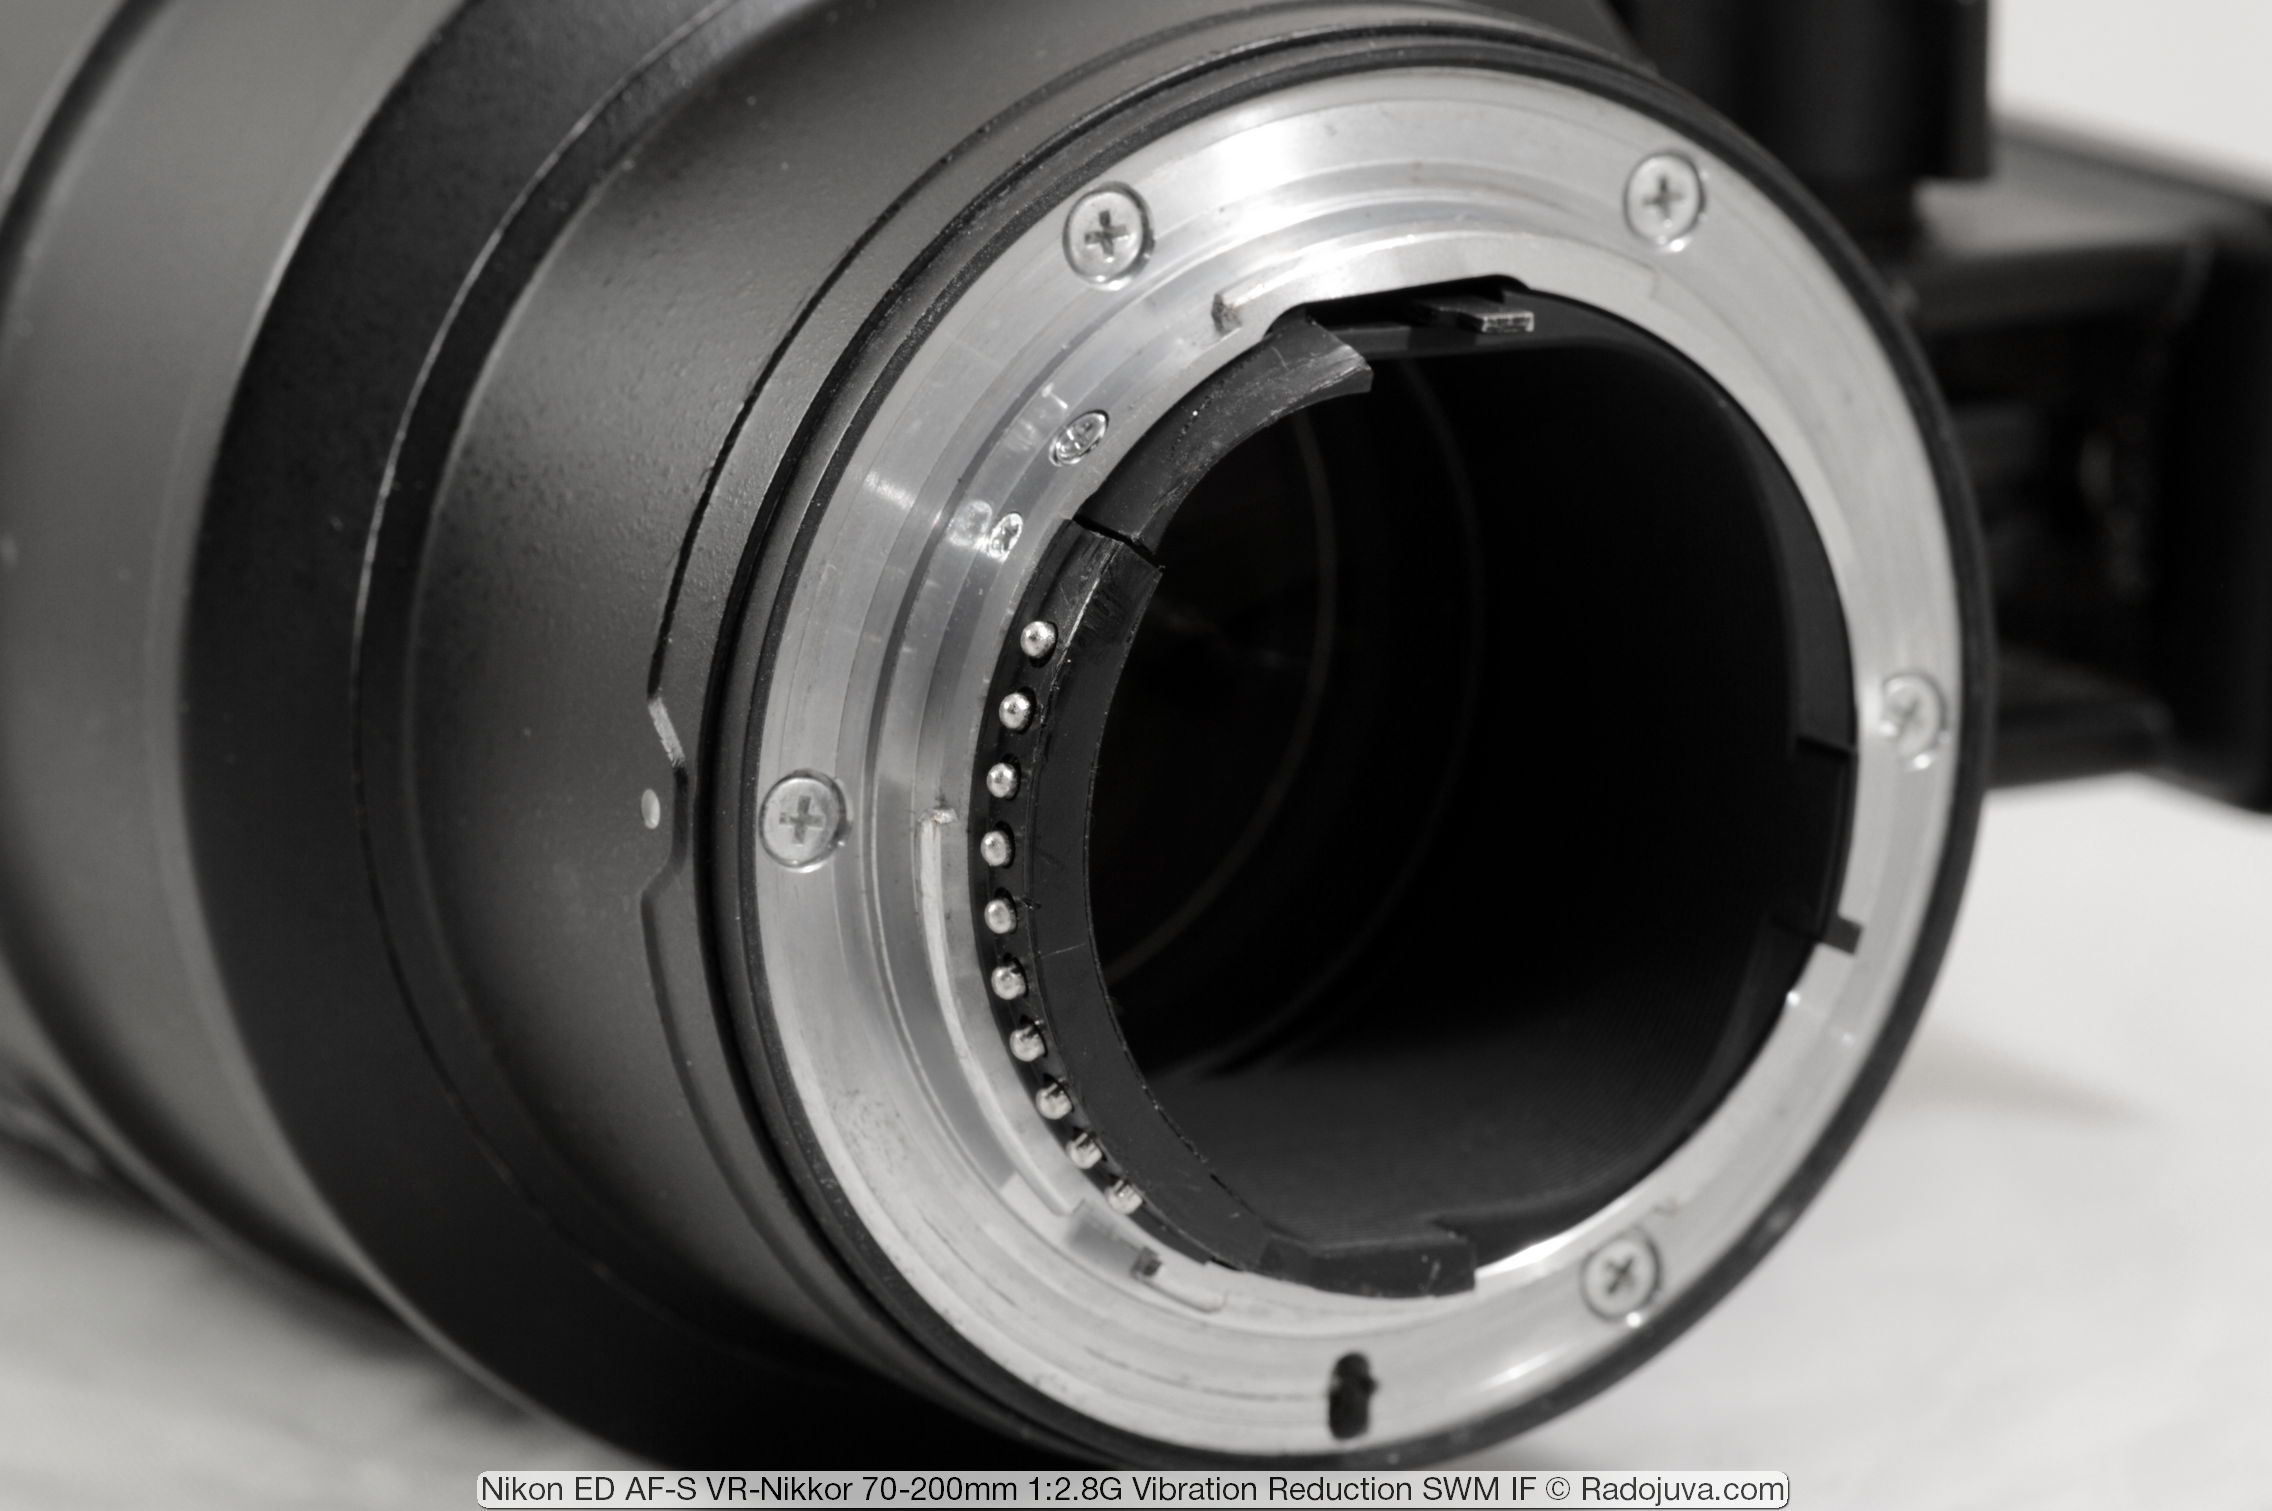 Nikon ED AF-S VR-Nikkor 70-200mm 1: 2.8G (vibratiereductie SWM IF)